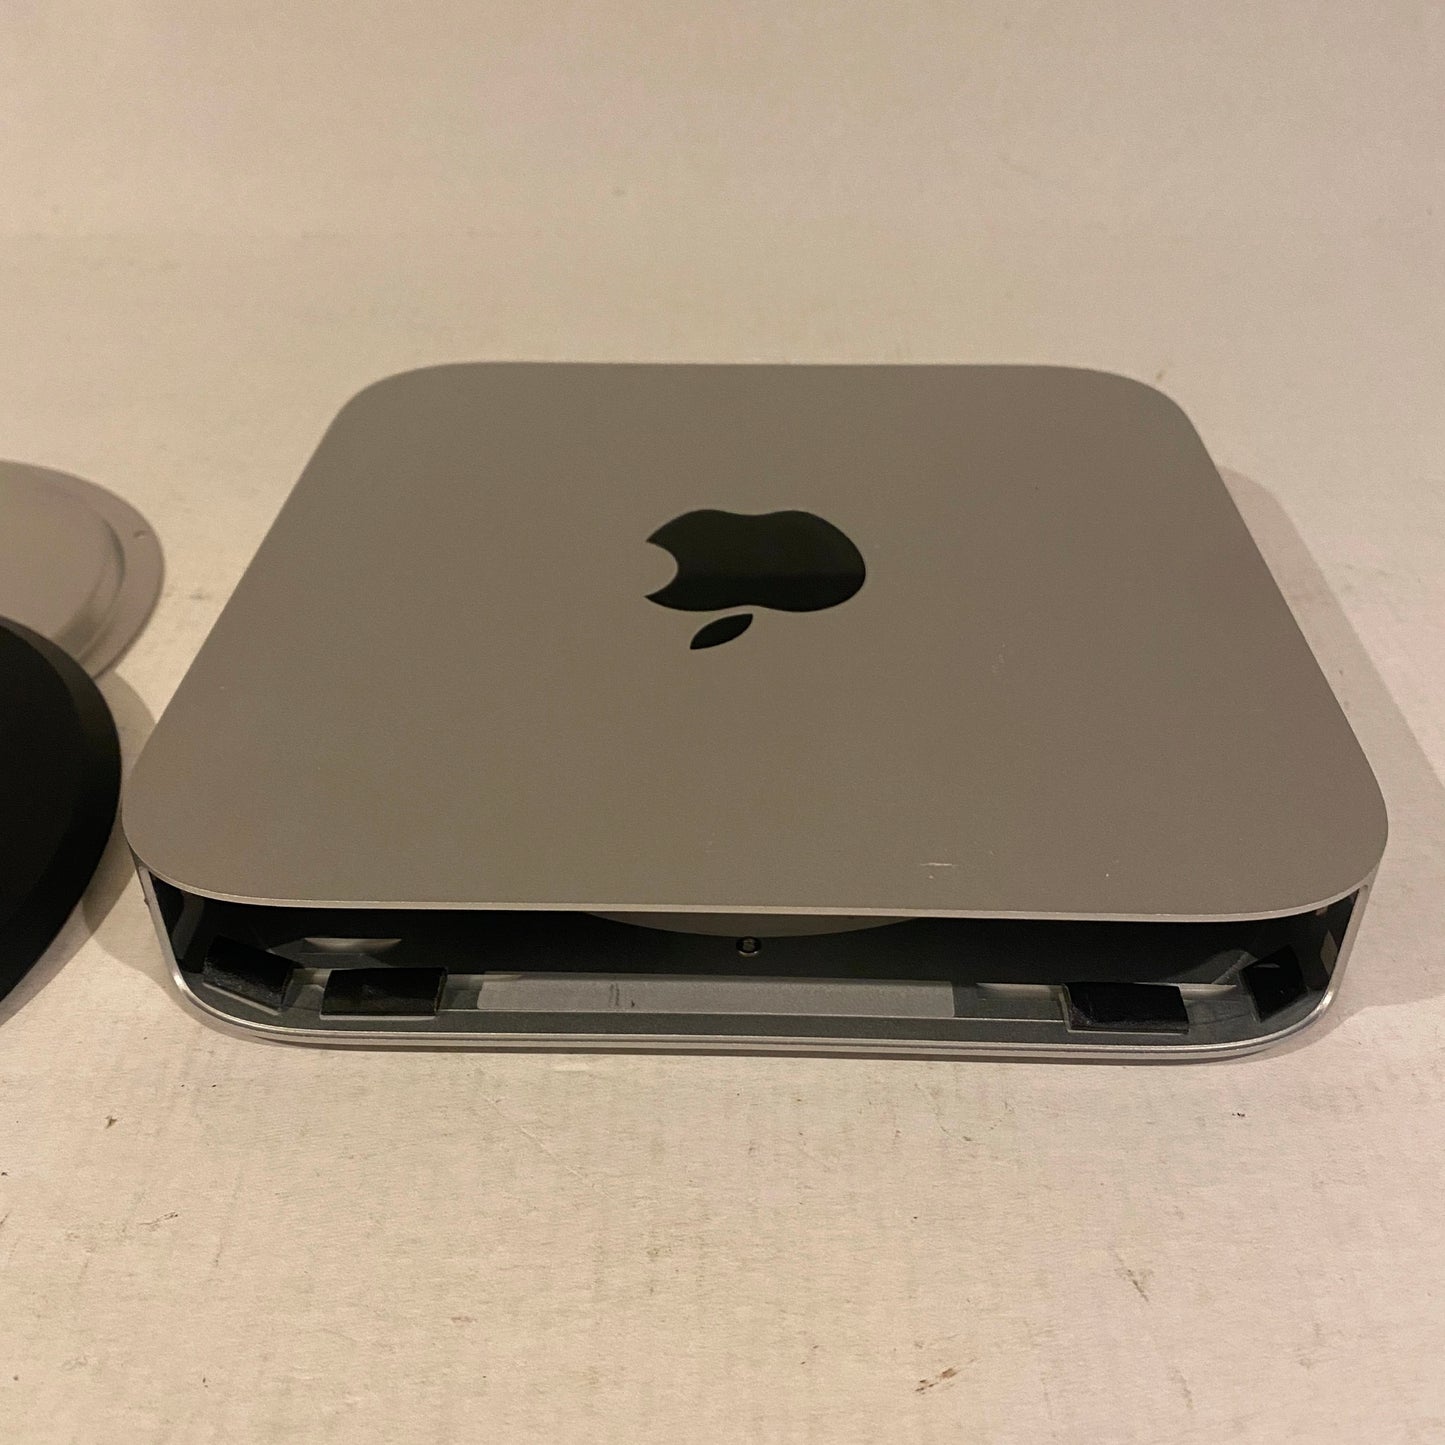 Late 2014 Mac Mini Case